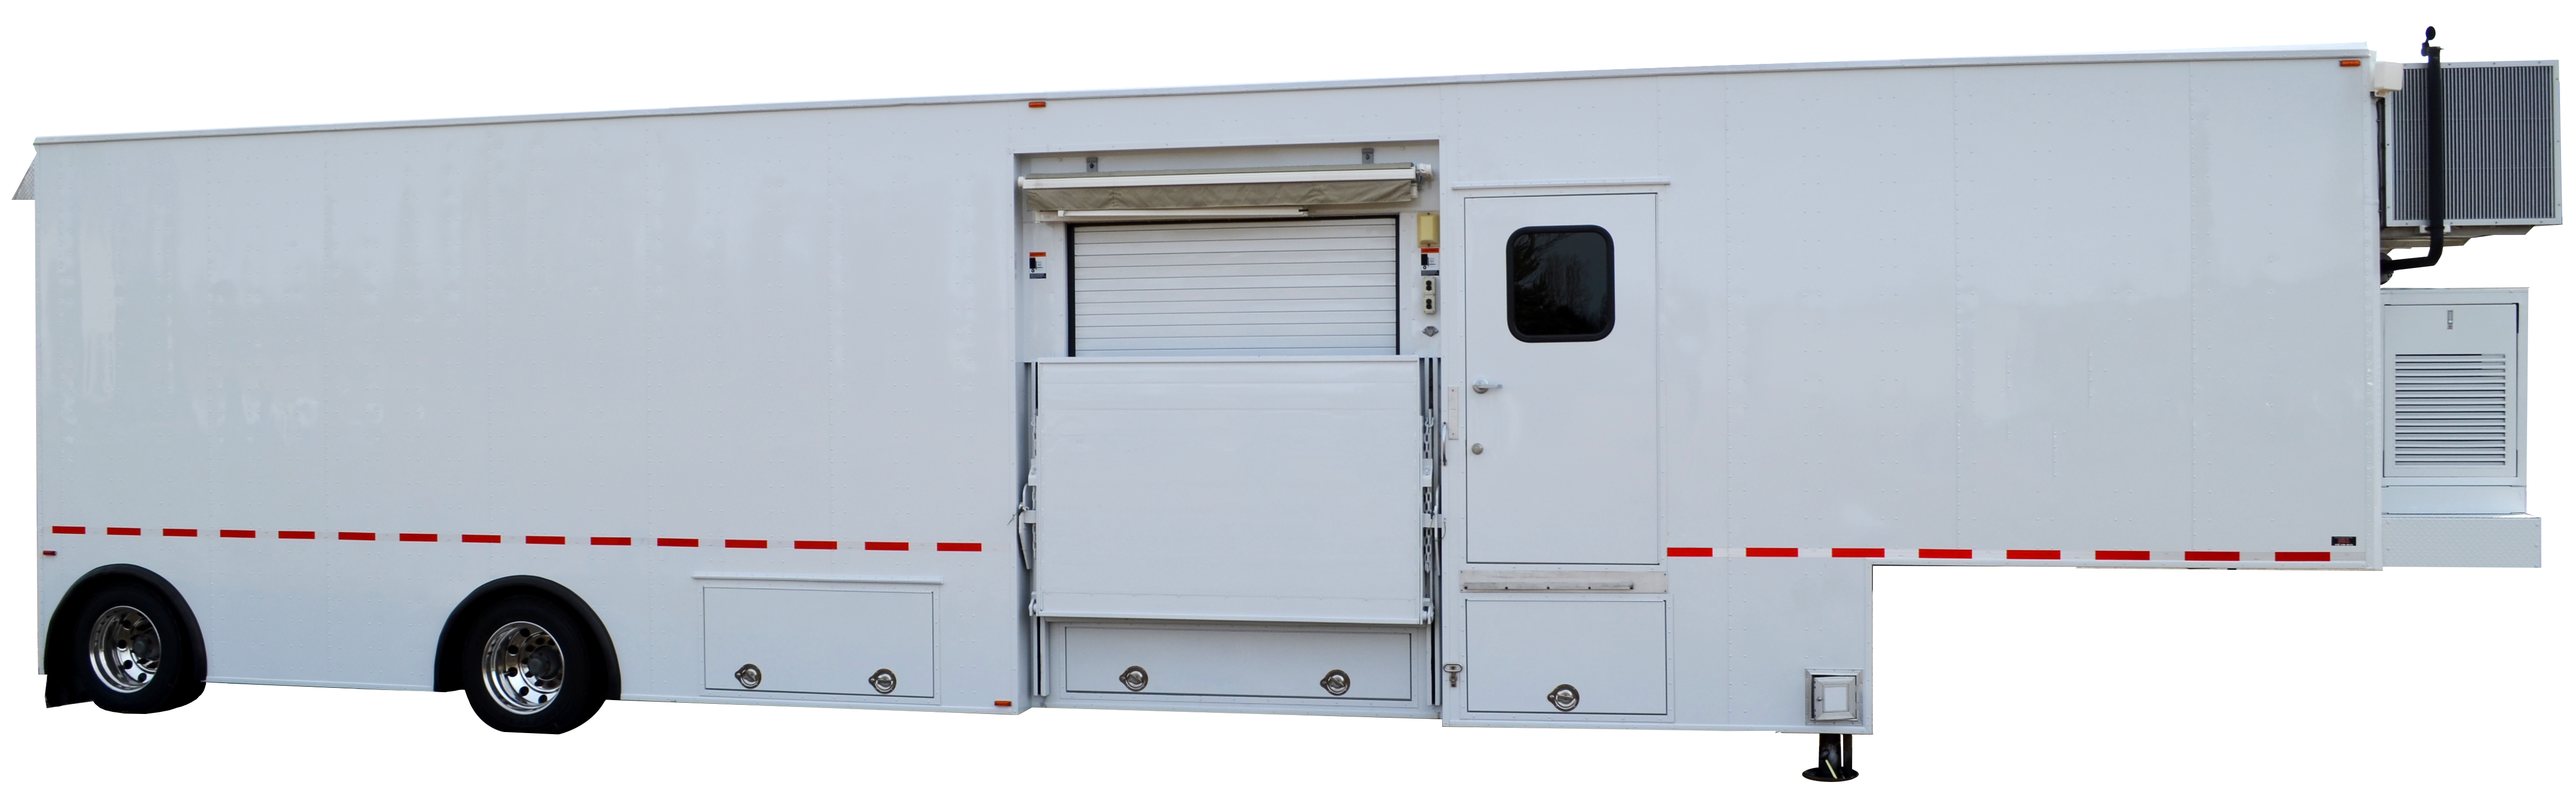 Mobile MRI Rentals - MRI Trailer Truck Rentals